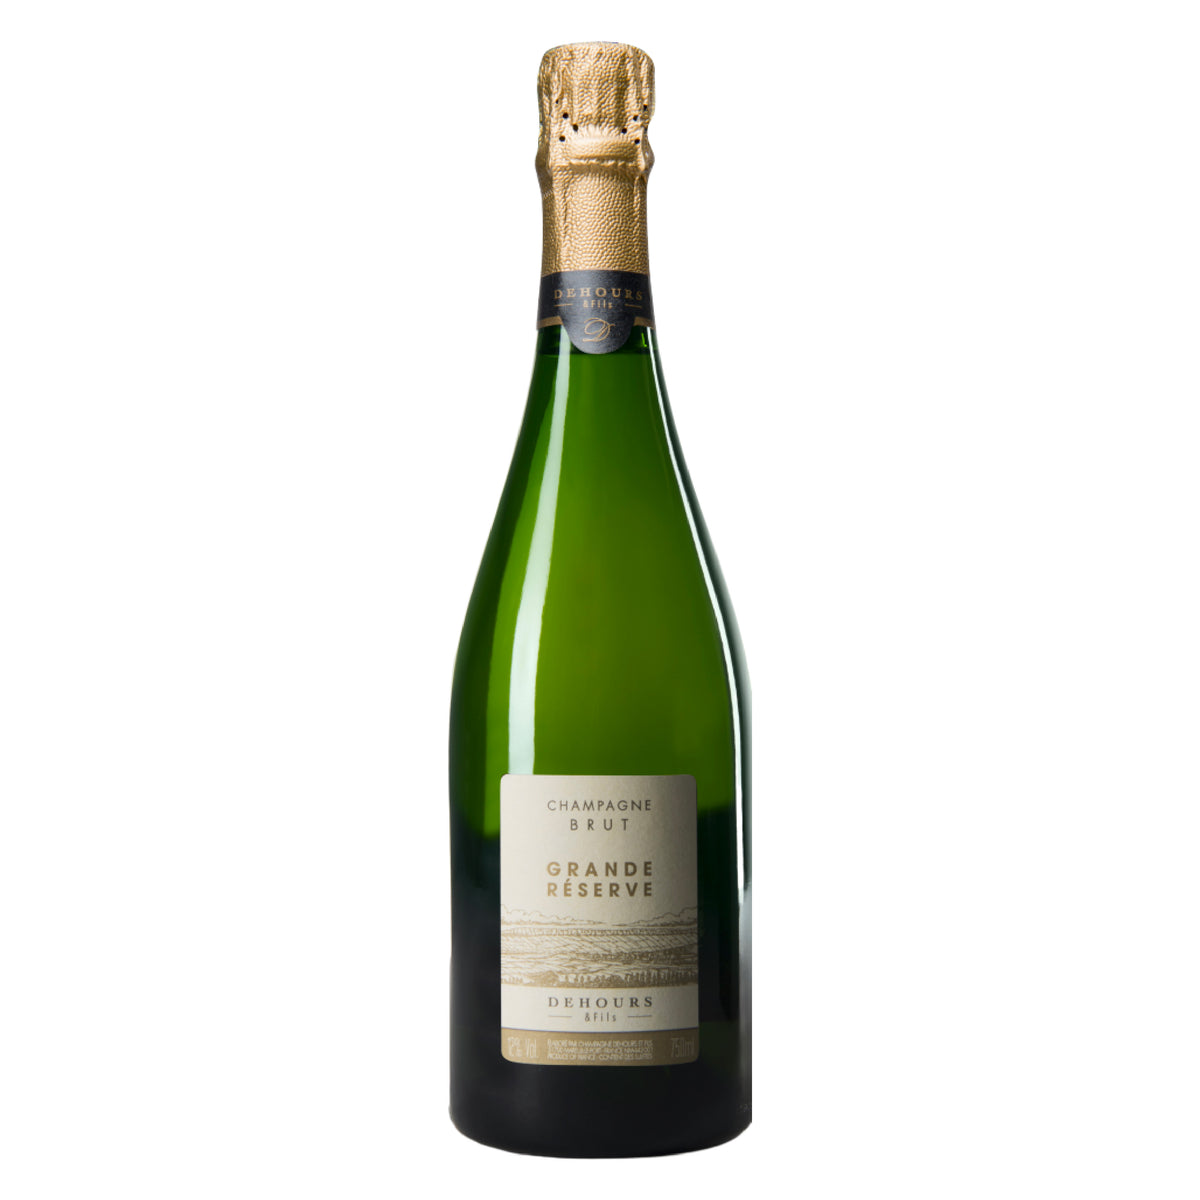 DEHOURS &amp; FILS Champagne Brut Grande Reserve NV